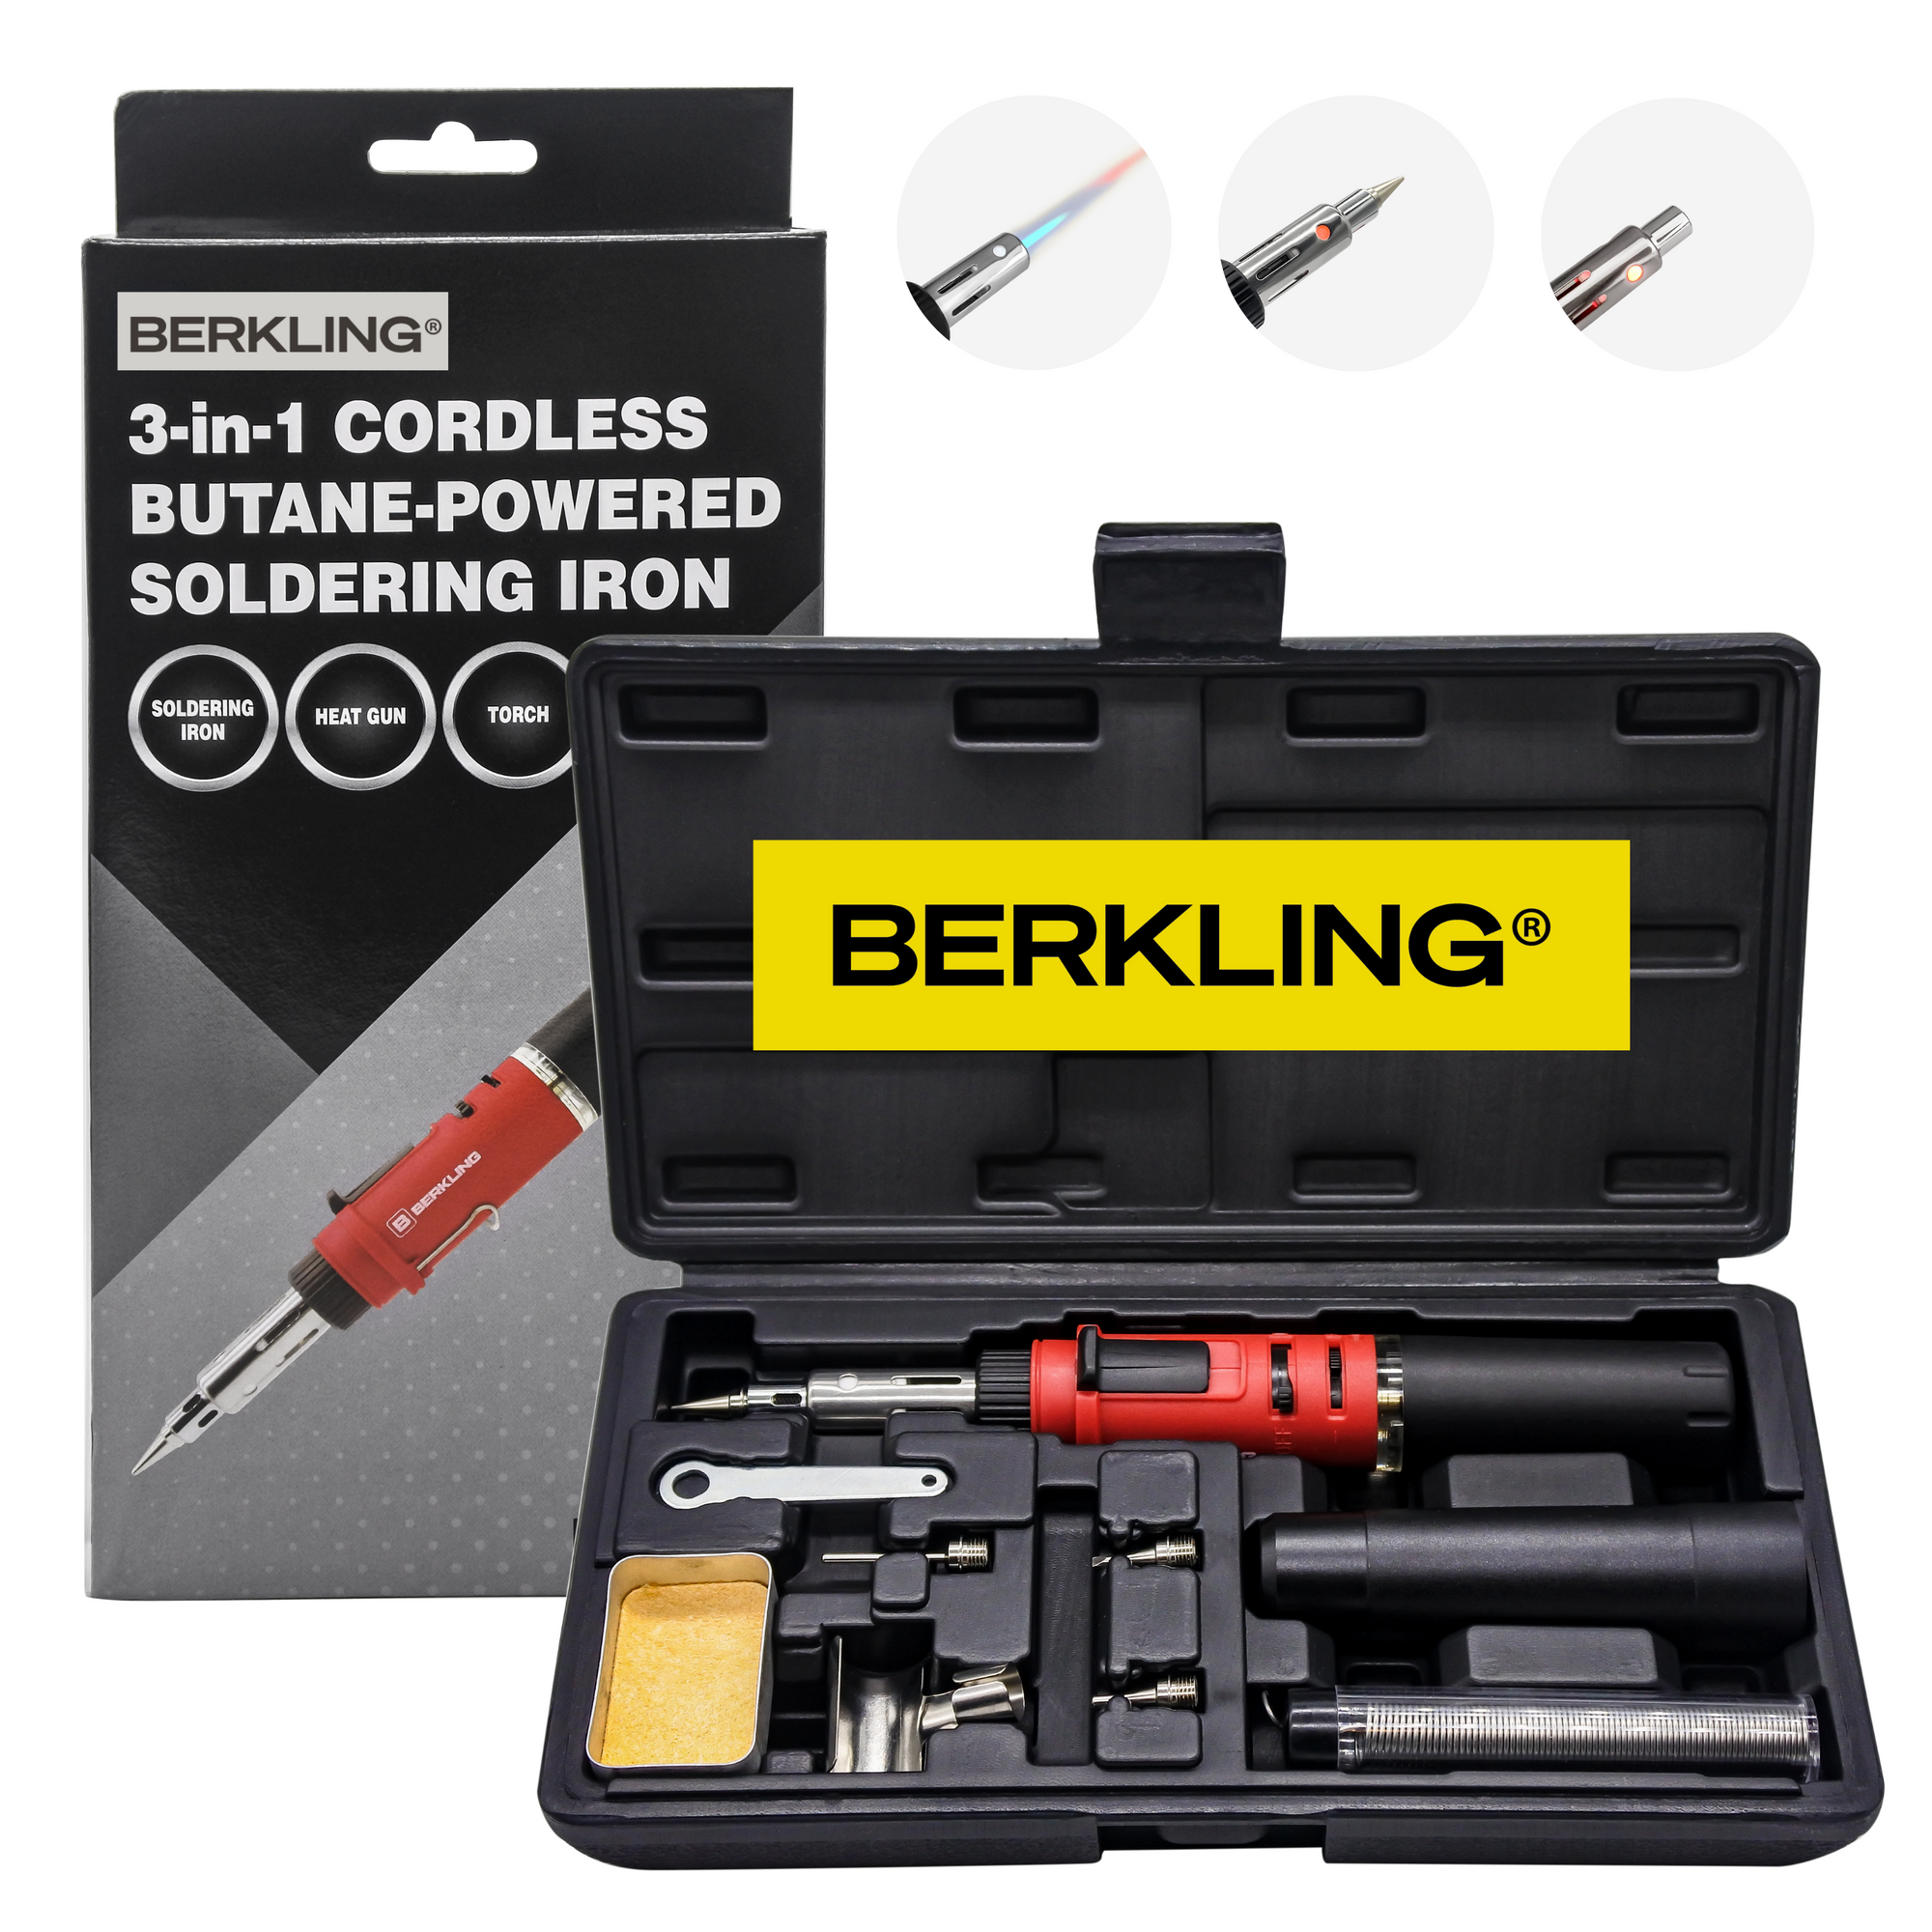 Berkling BSG-568KR Kit de soldador de butano: pistola de calor con soplete de soldadura inalámbrico, incluye 3 puntas, alambre de soldadura con núcleo de resina 60/40 de 15 g, mini llave, esponja 